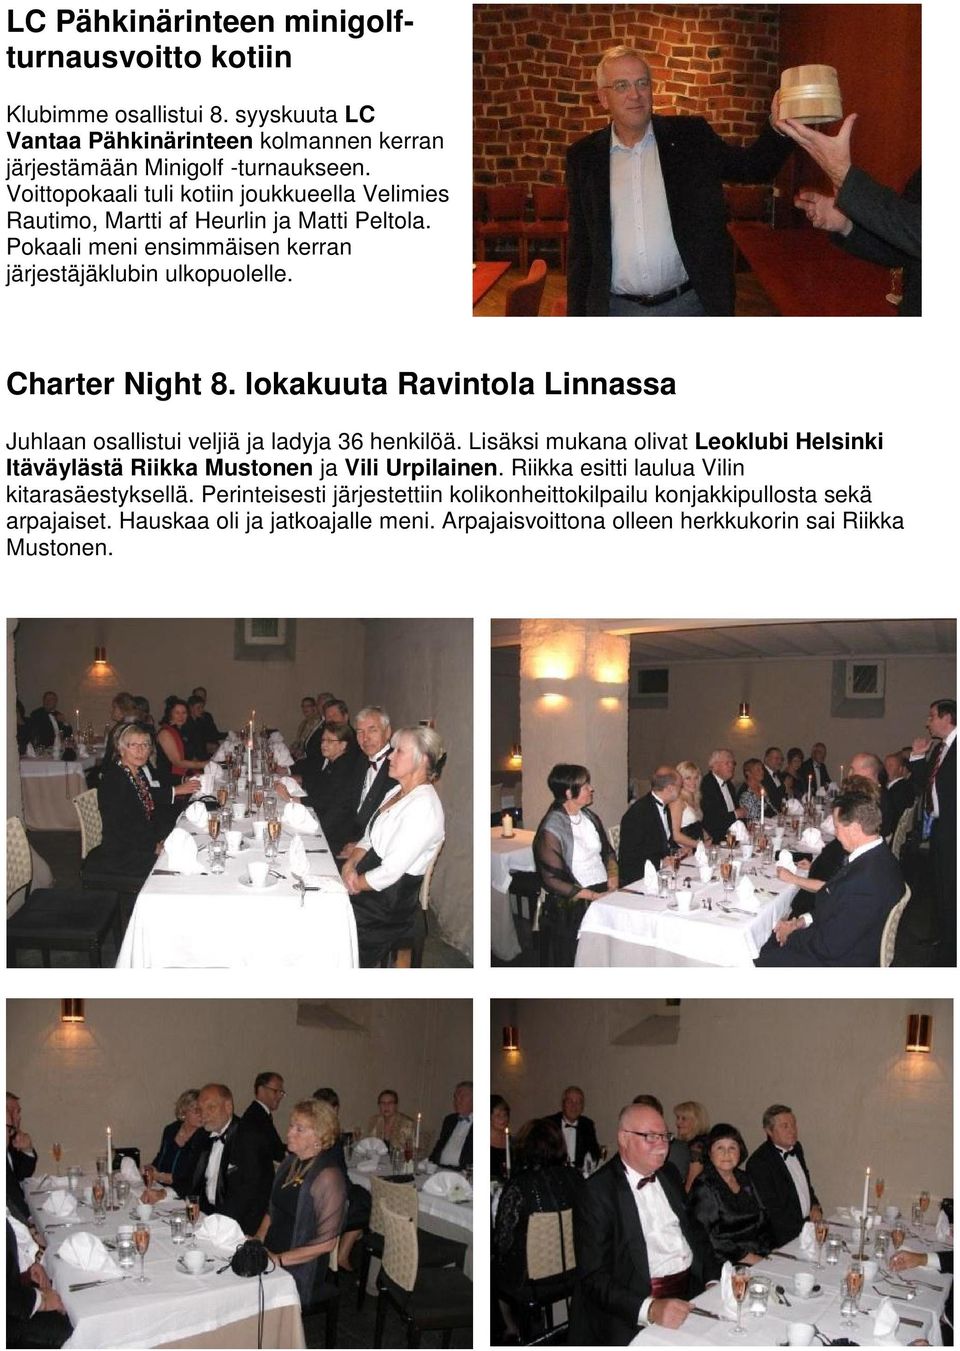 lokakuuta Ravintola Linnassa Juhlaan osallistui veljiä ja ladyja 36 henkilöä. Lisäksi mukana olivat Leoklubi Helsinki Itäväylästä Riikka Mustonen ja Vili Urpilainen.